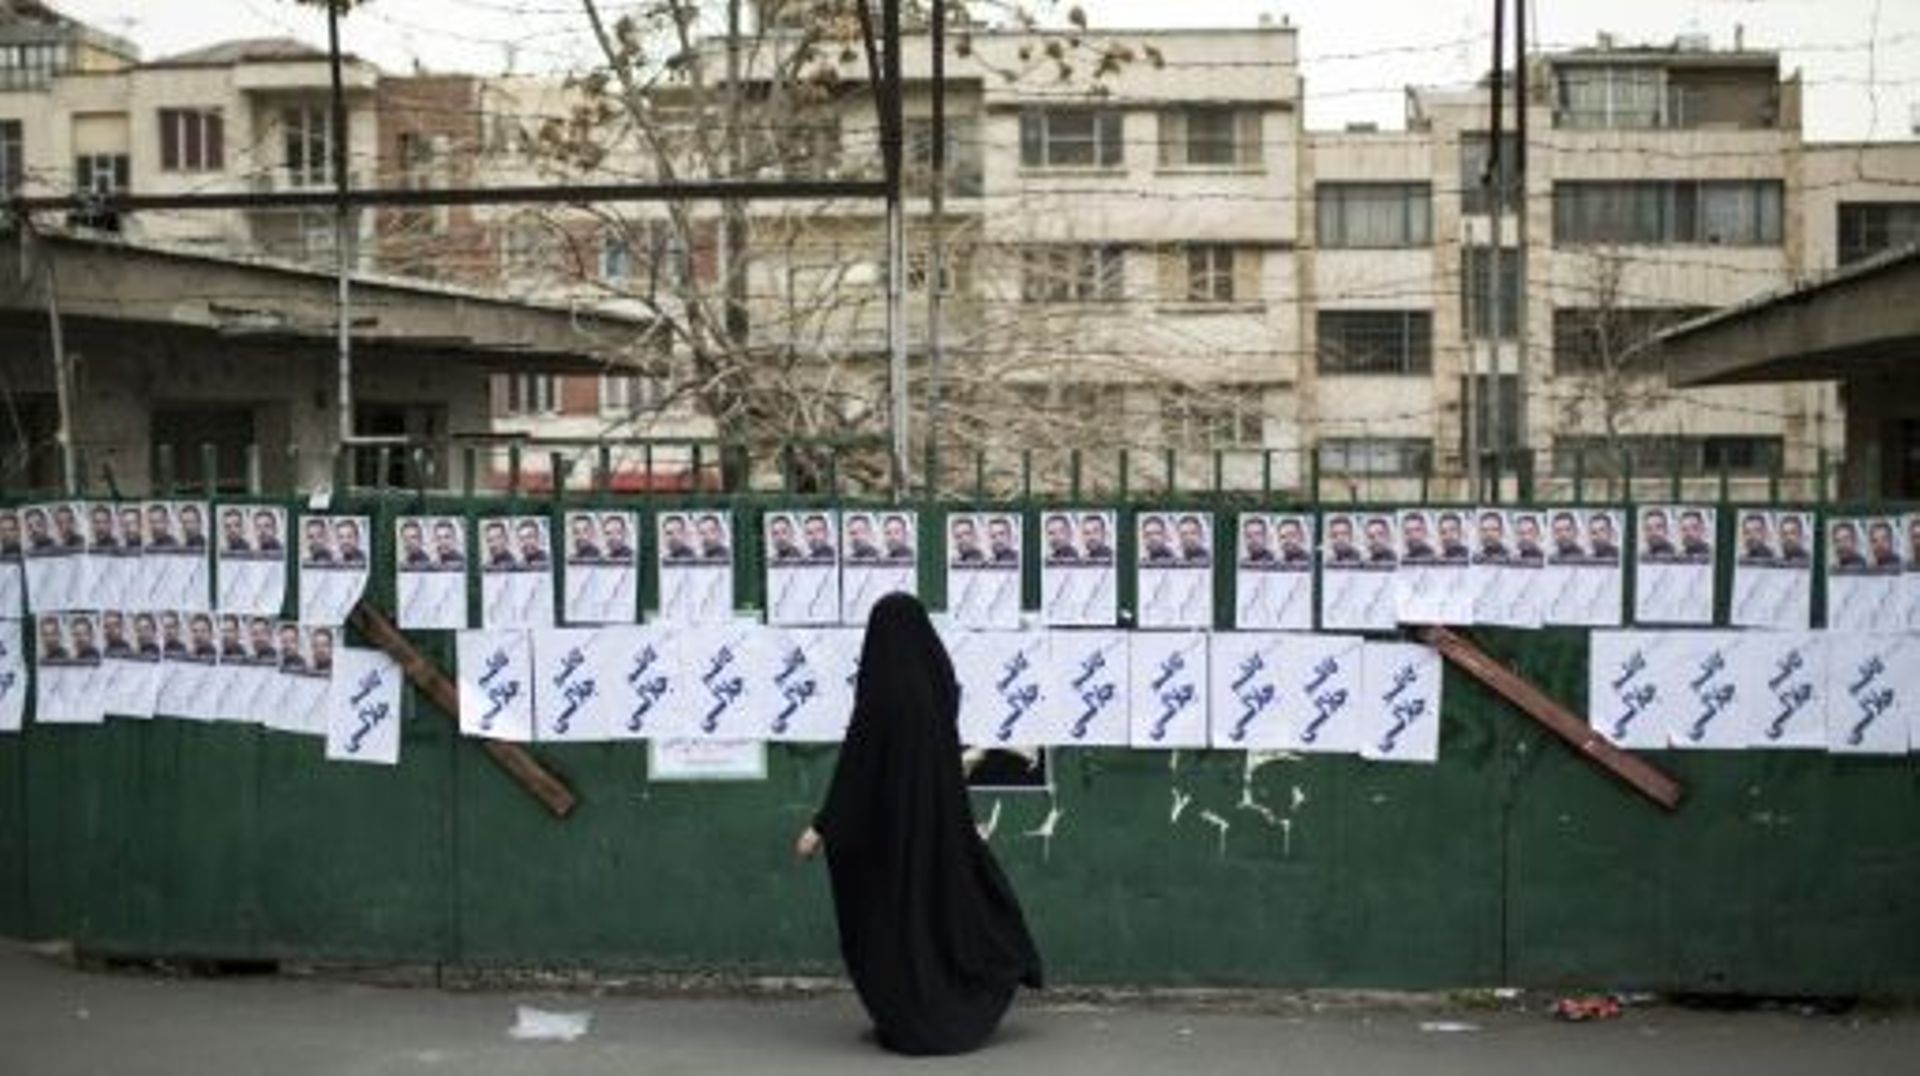 Une femme passe devant des panneaux électoraux, le 20 février 2016 à Téhéran